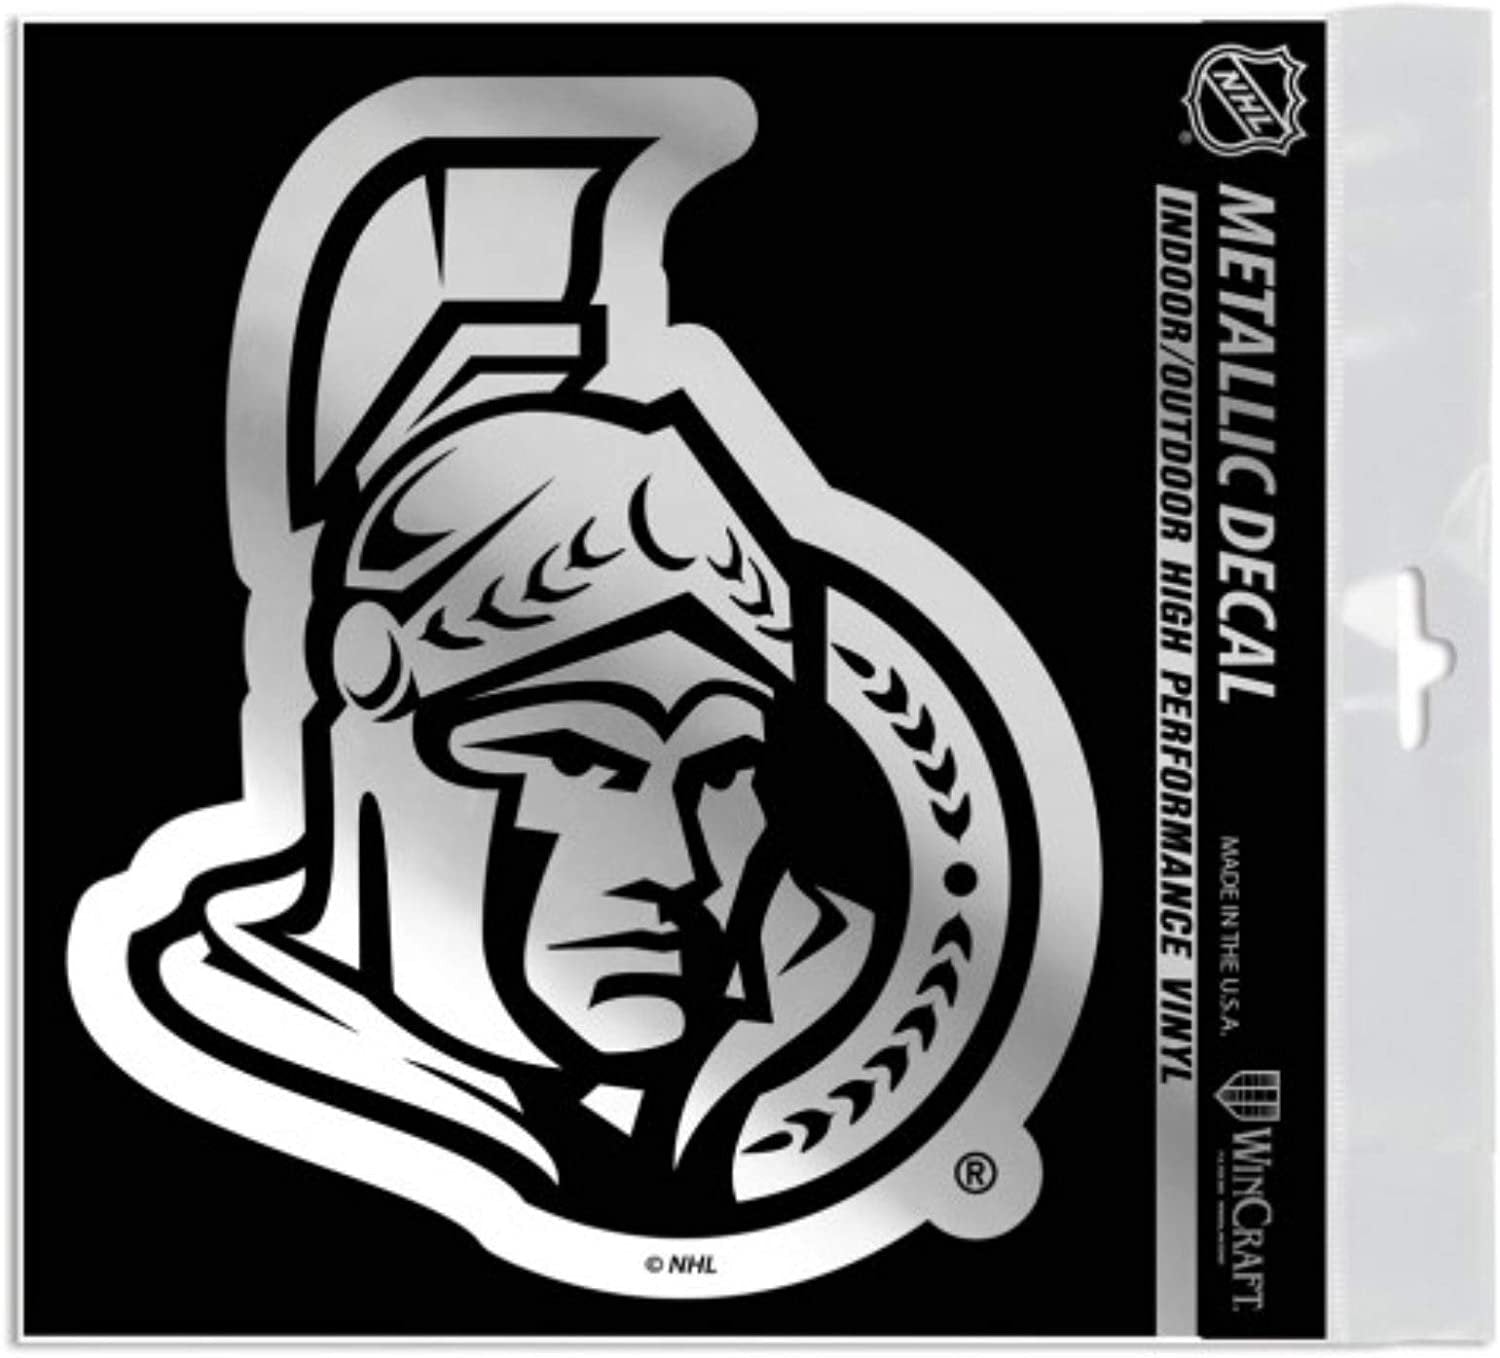 Ottawa Senators 6 Inch Decal Sticker, Metallic Chrome Shimmer Design